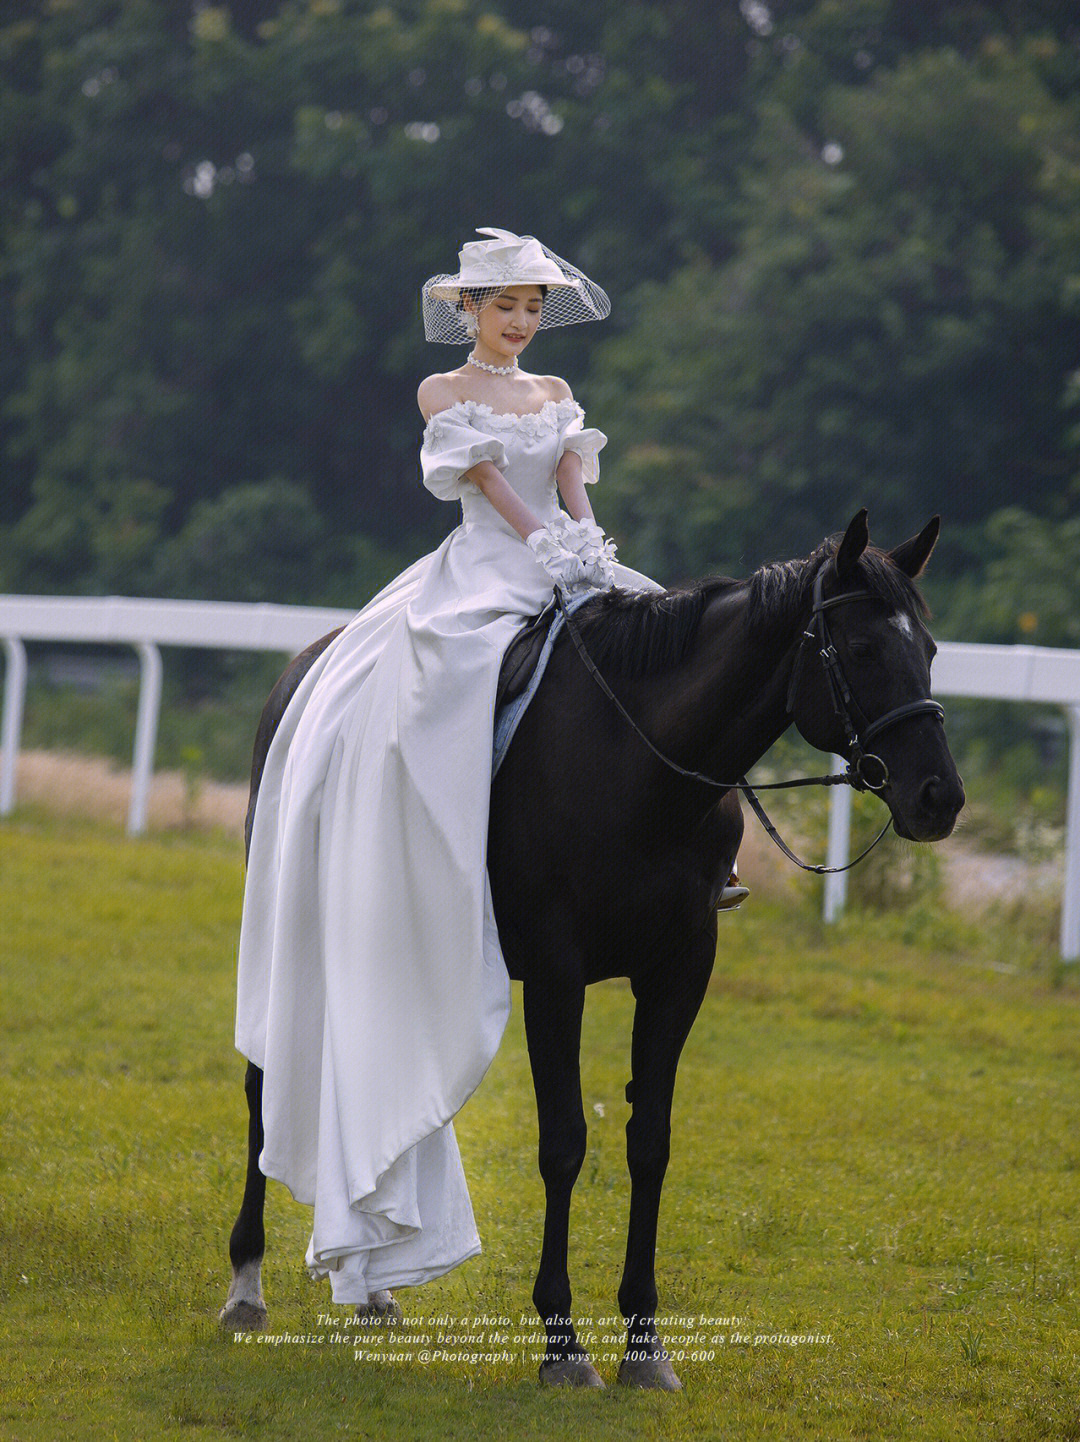 穿婚纱骑马就真的很有氛围感嘉兴婚纱照